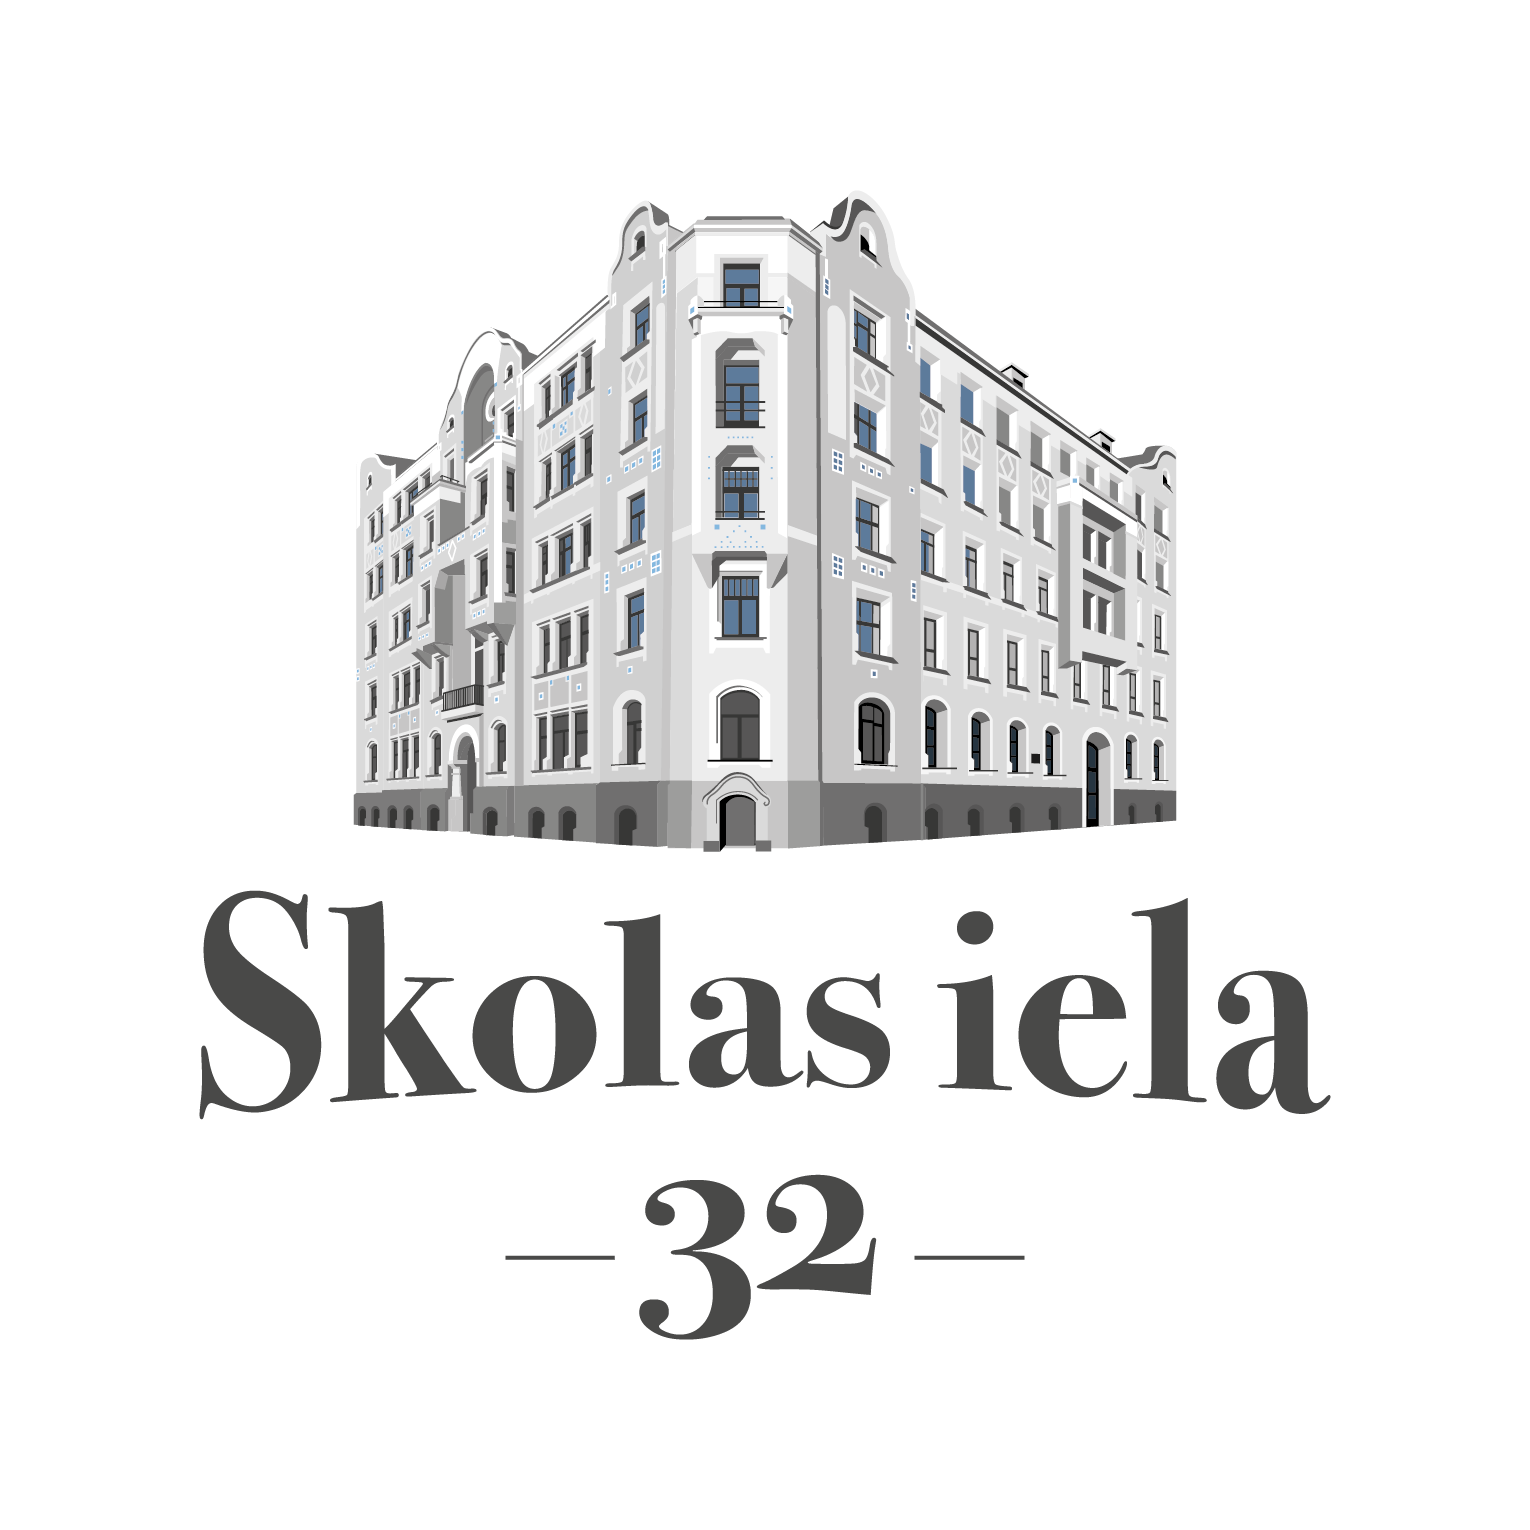 Skolas Street 32, Logo